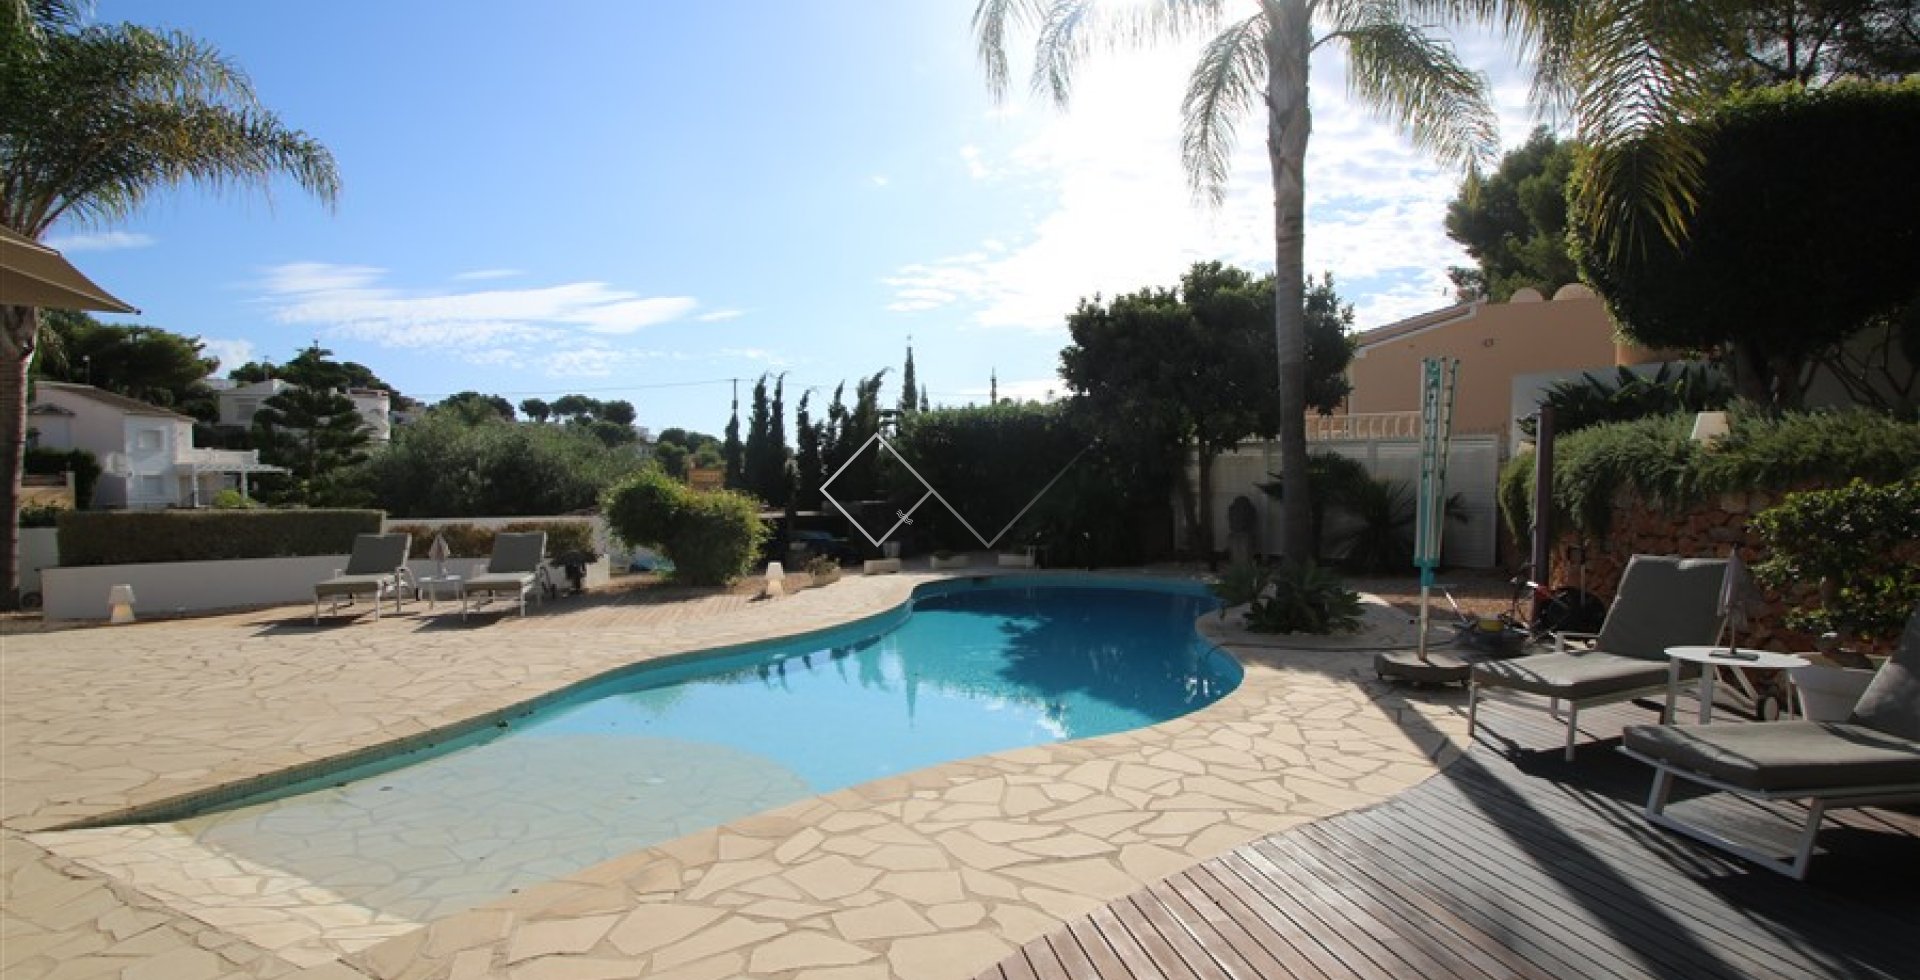 zwembad en terras - Ibiza villa te koop in Benissa met verwarmd zwembad